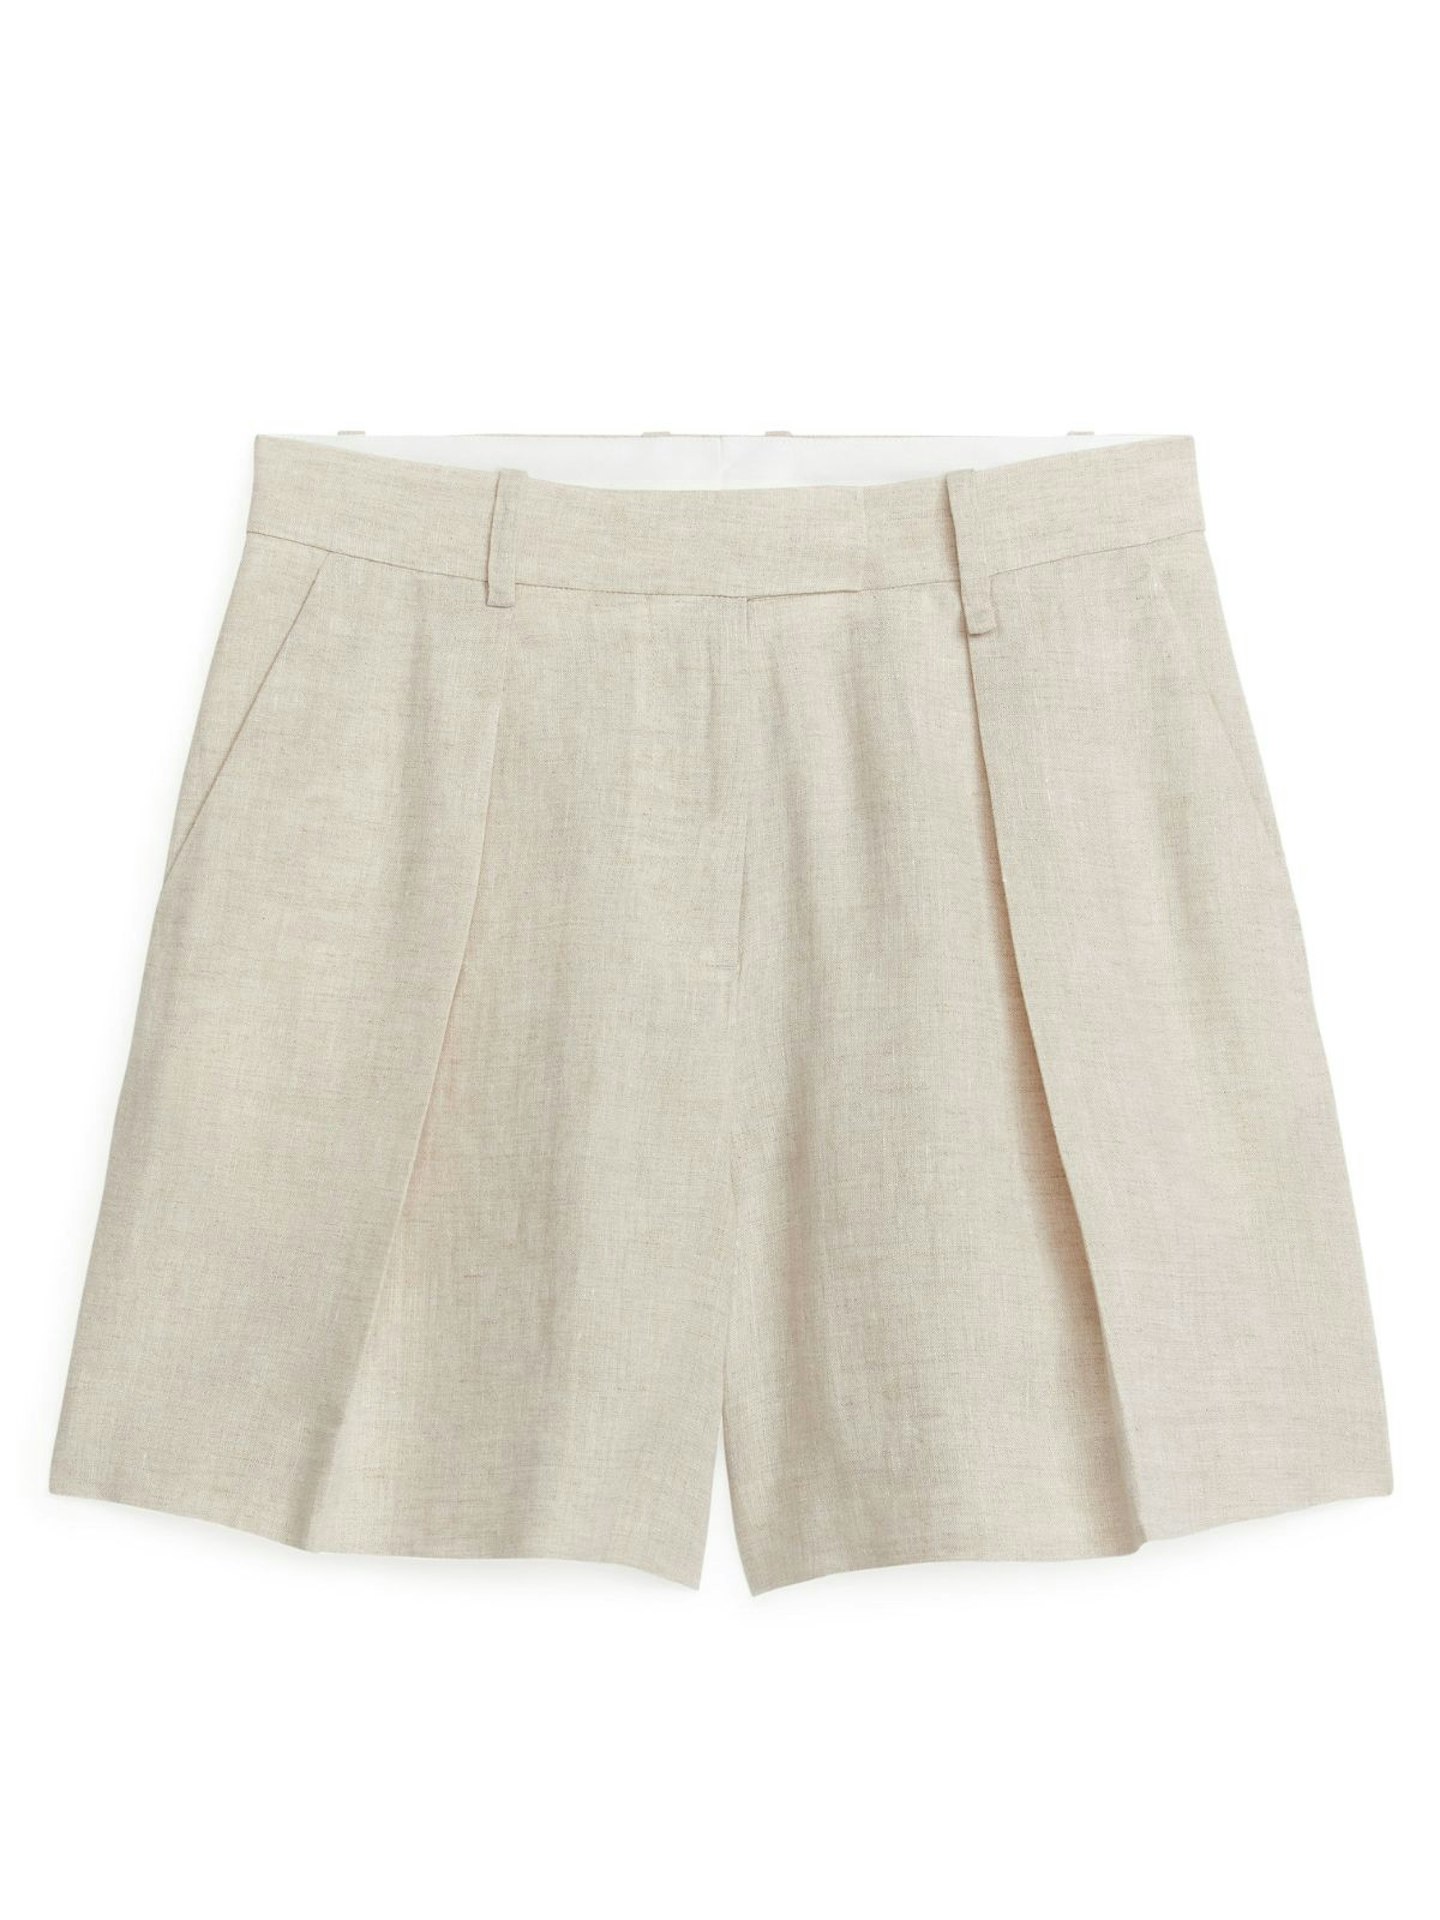 Arket High Waist Linen Shorts